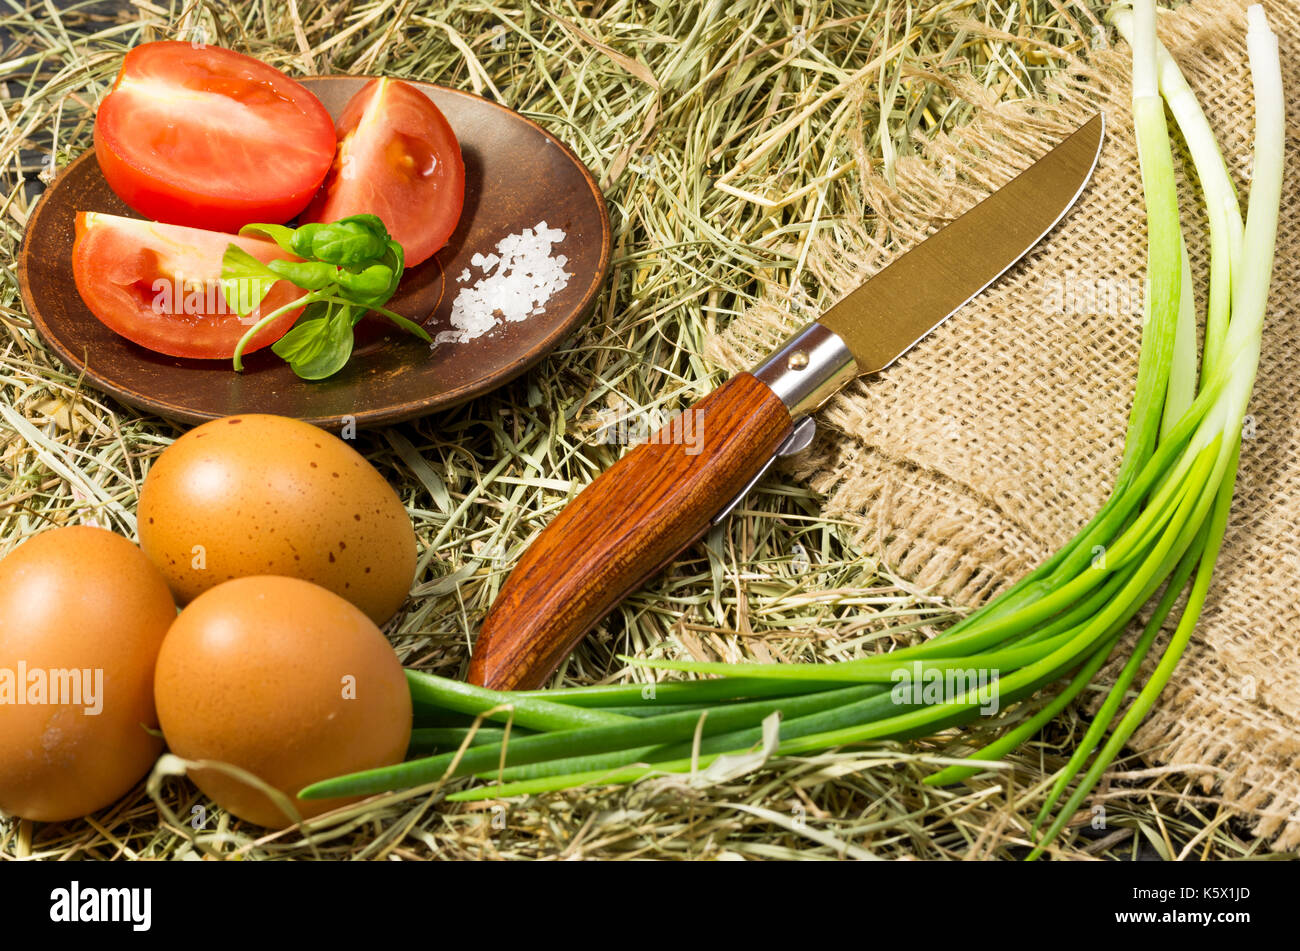 https://c8.alamy.com/compes/k5x1jd/composicion-en-un-estilo-rural-classic-cuchillo-y-verduras-cortar-las-verduras-k5x1jd.jpg